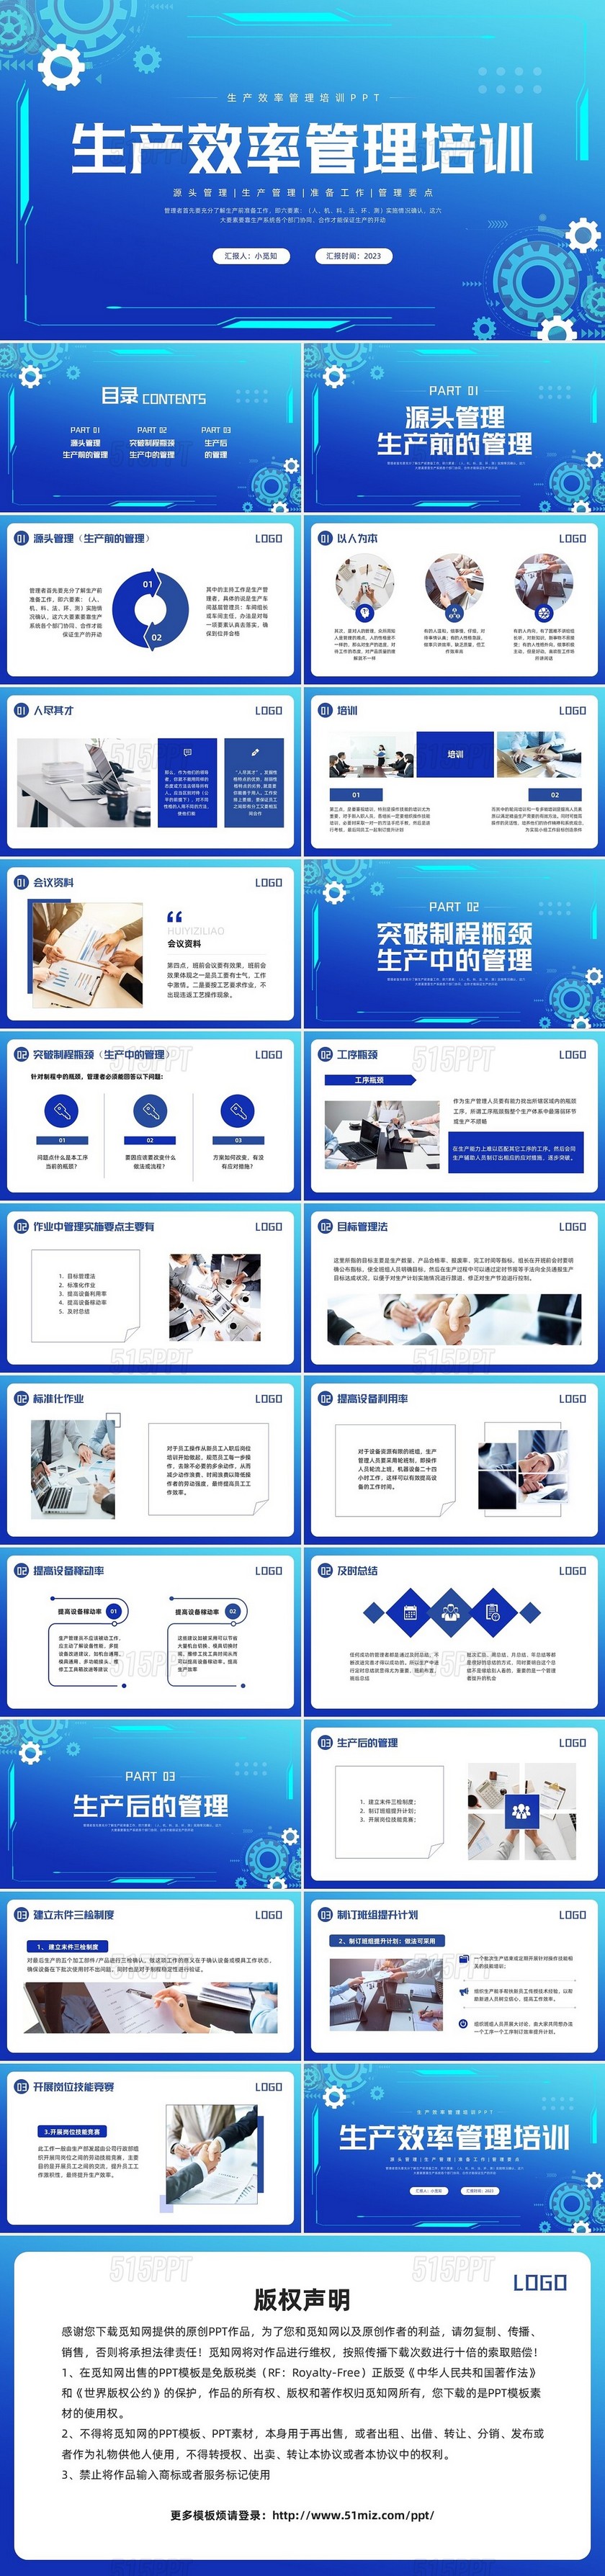 蓝色简约生产效率管理培训PPT模板宣传PPT动态PPT